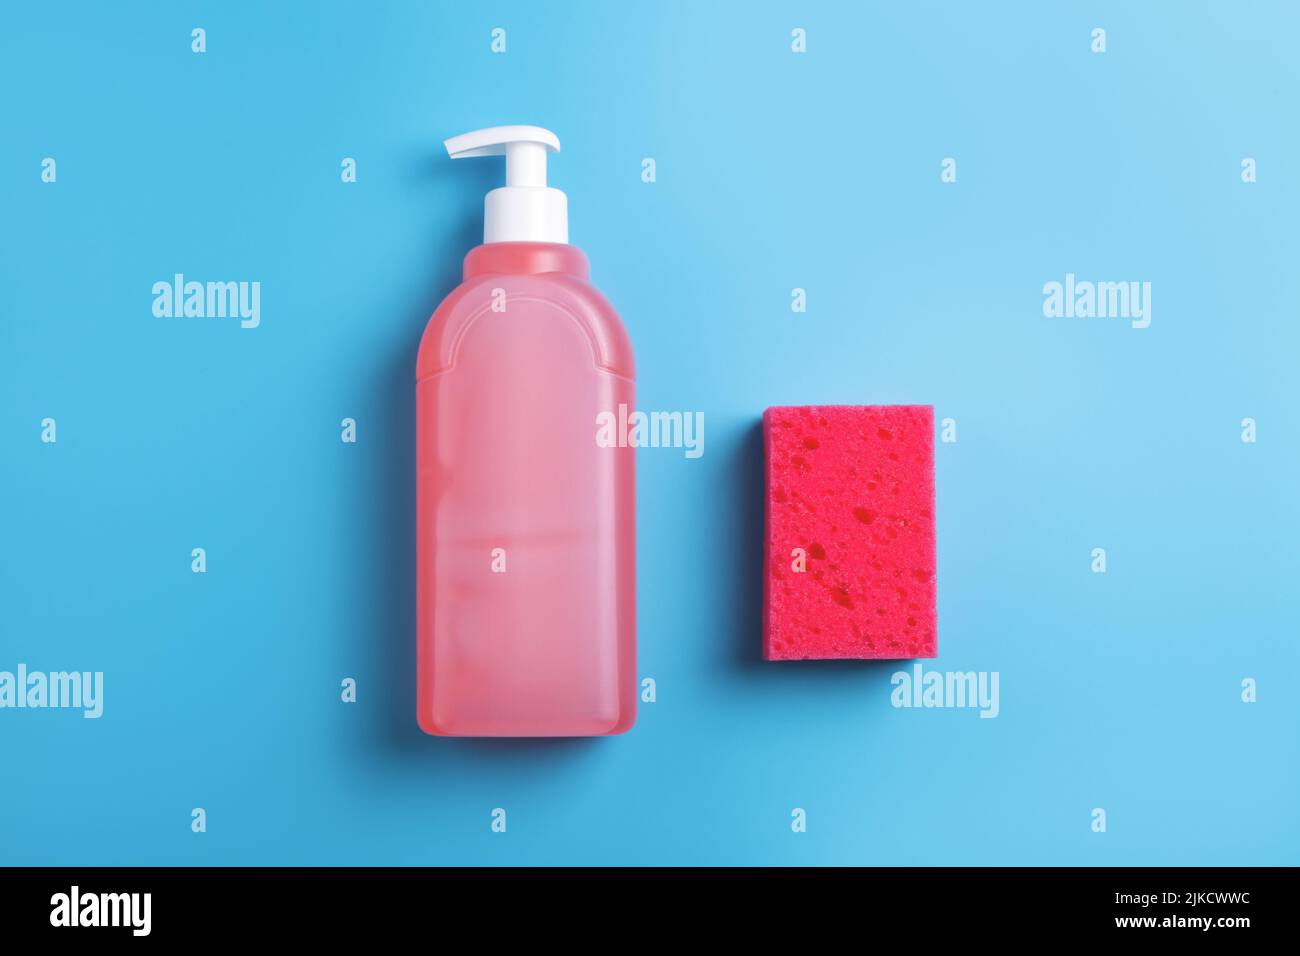 Dish soap bottle -Fotos und -Bildmaterial in hoher Auflösung - Seite 2 -  Alamy